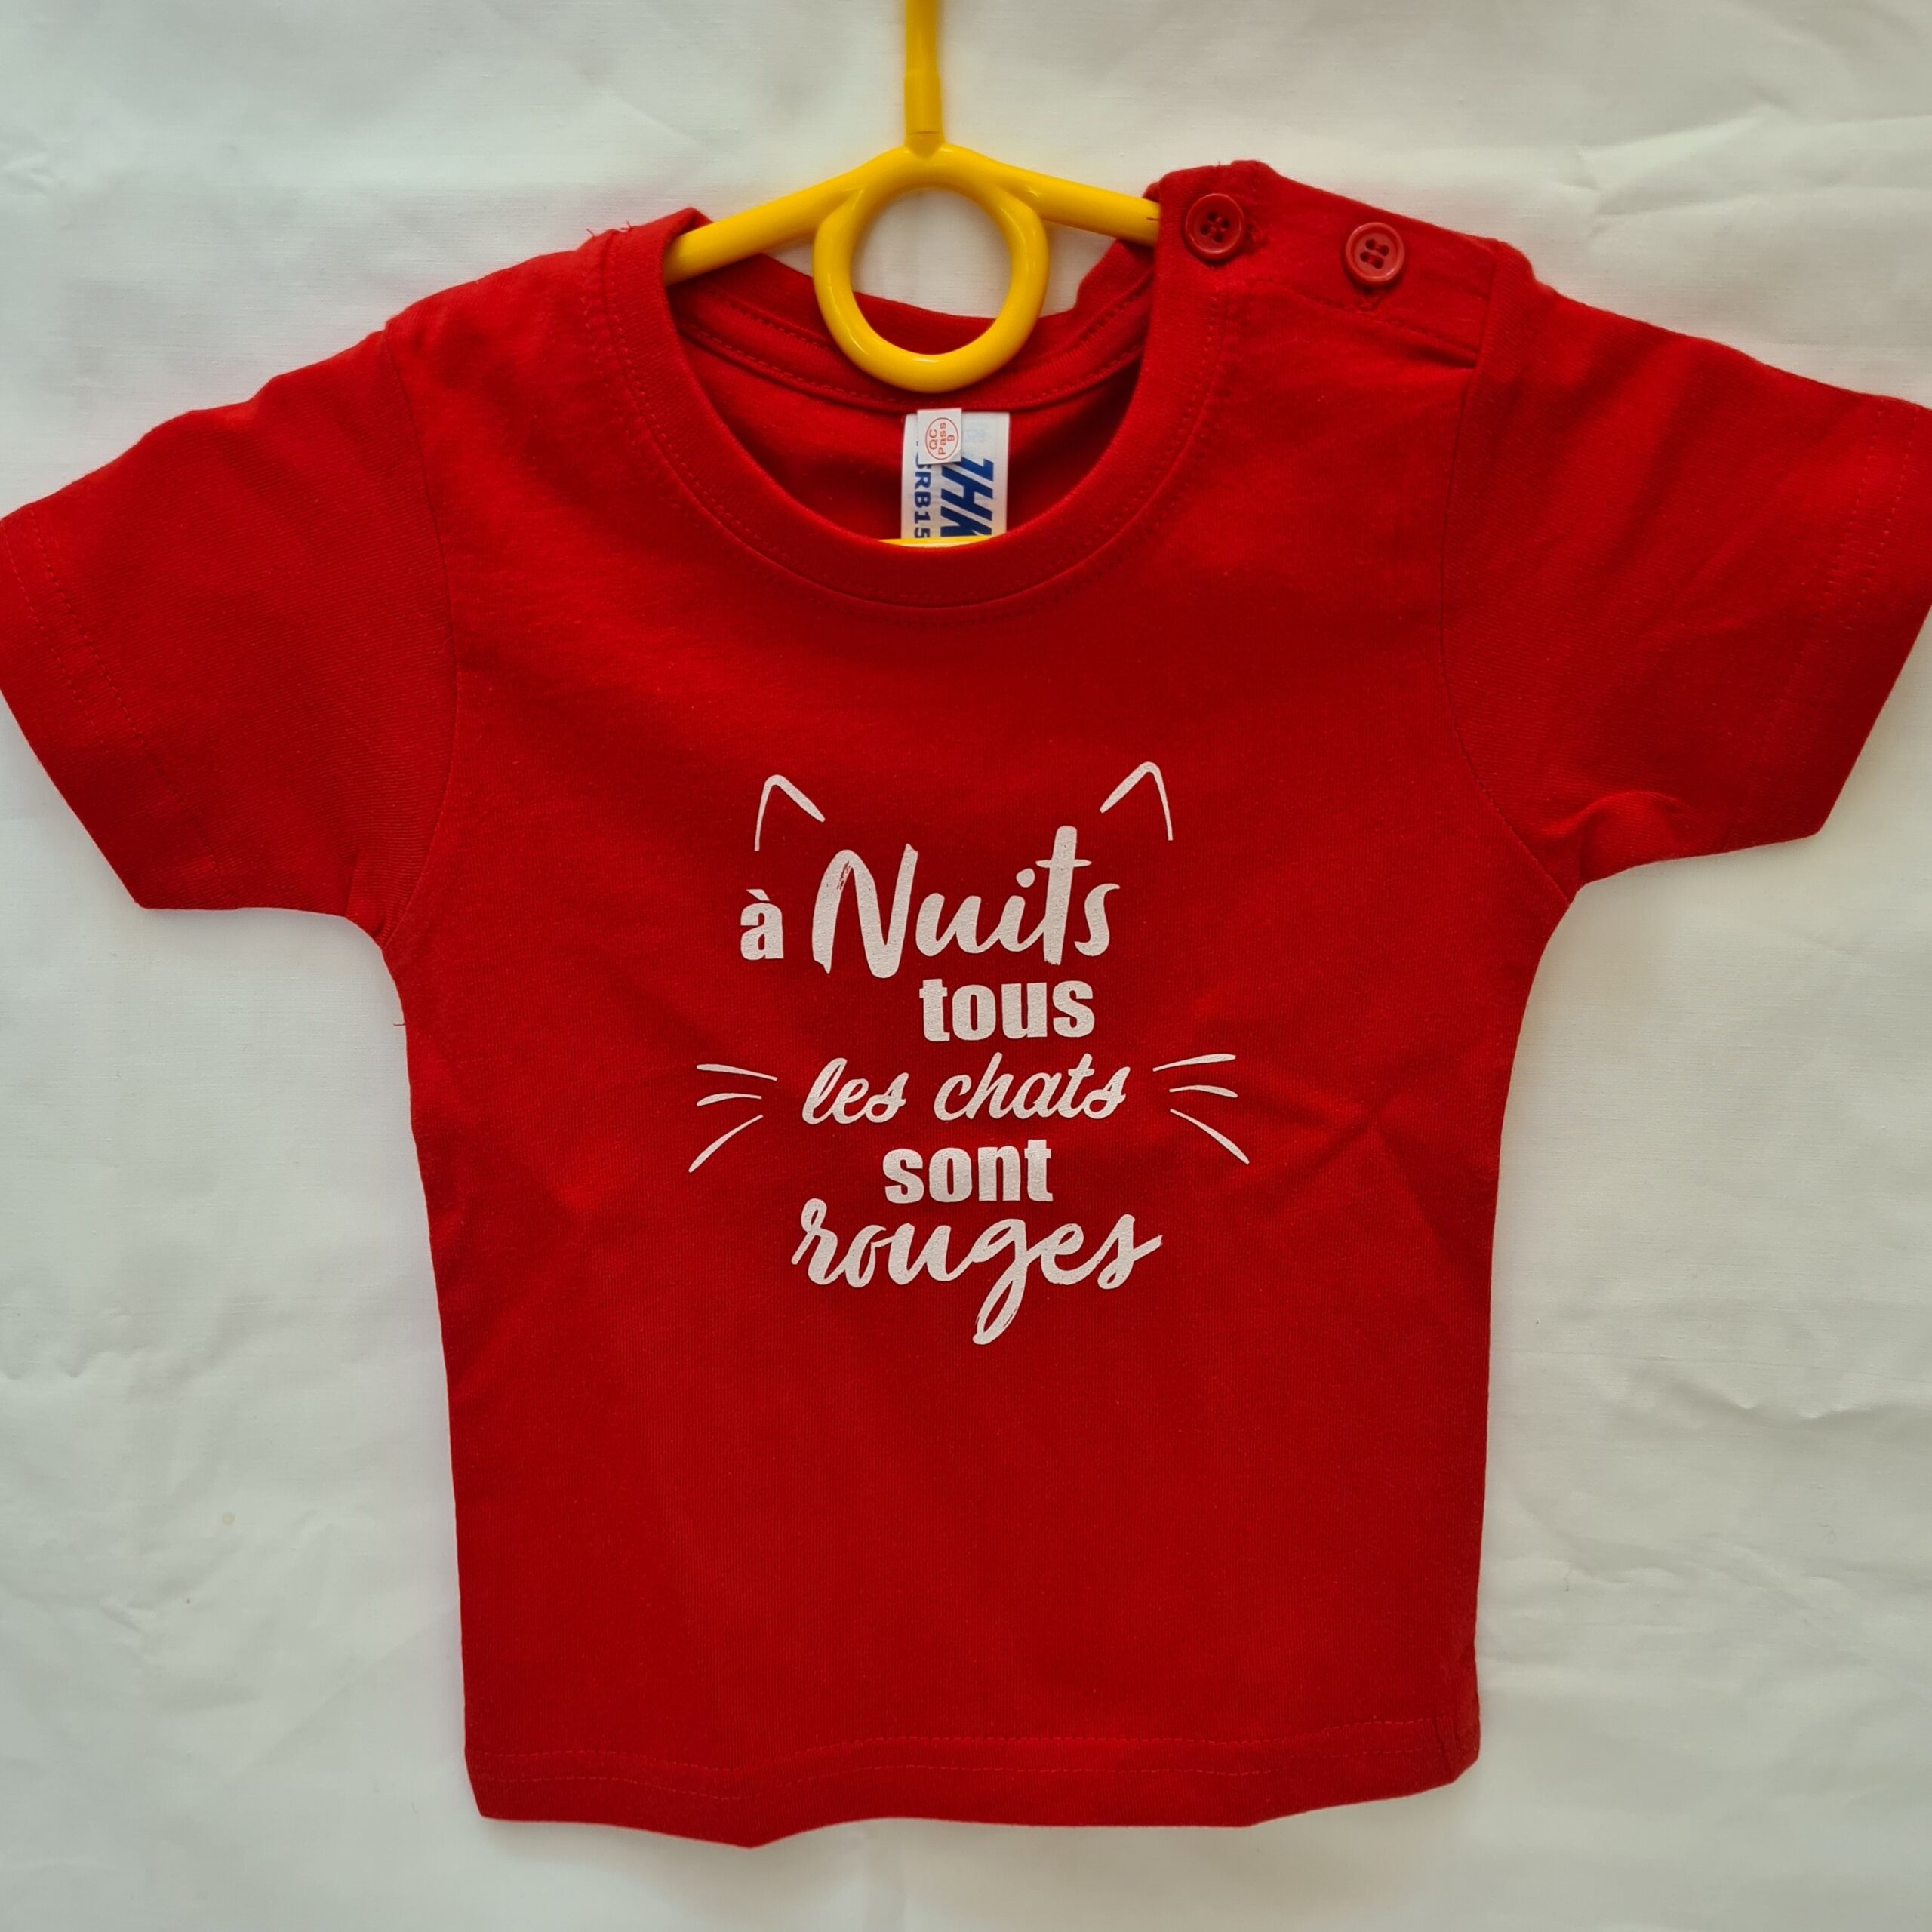 Tee-shirt enfant “A Nuits tous les chats sont rouges” rouge – 1 an